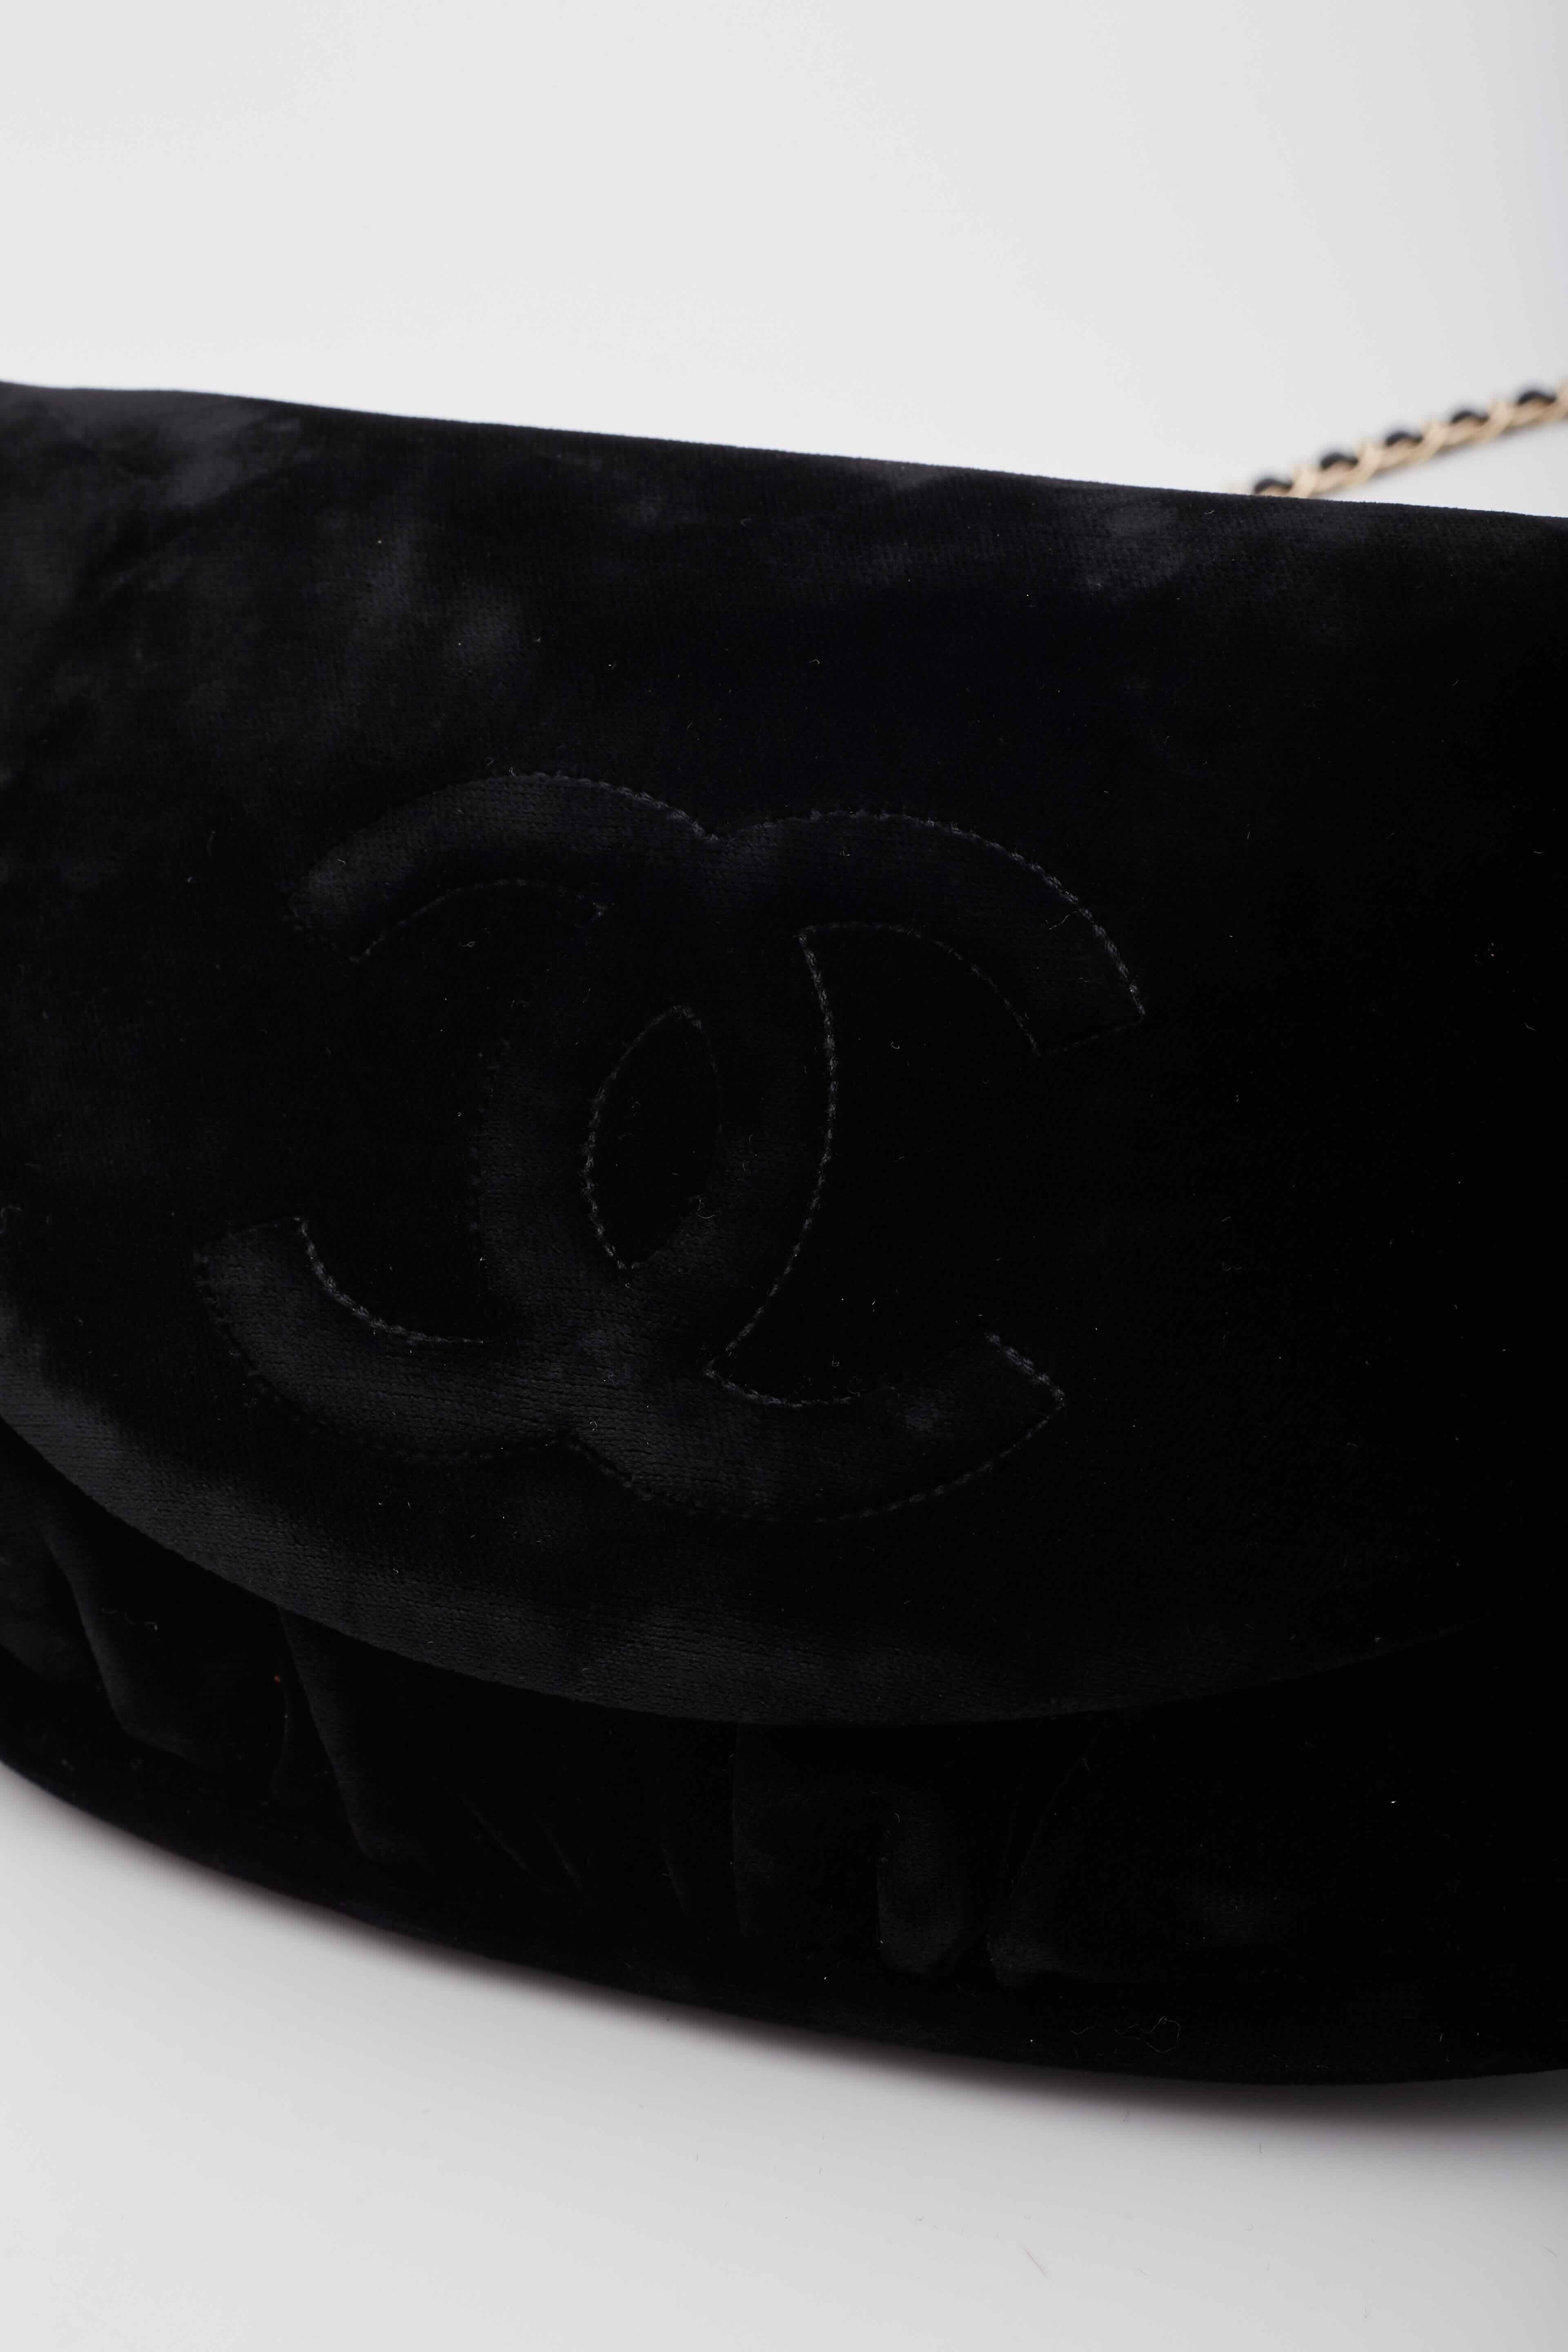 Chanel Velvet Half Moon Black Wallet on Chain Bag For Sale 2